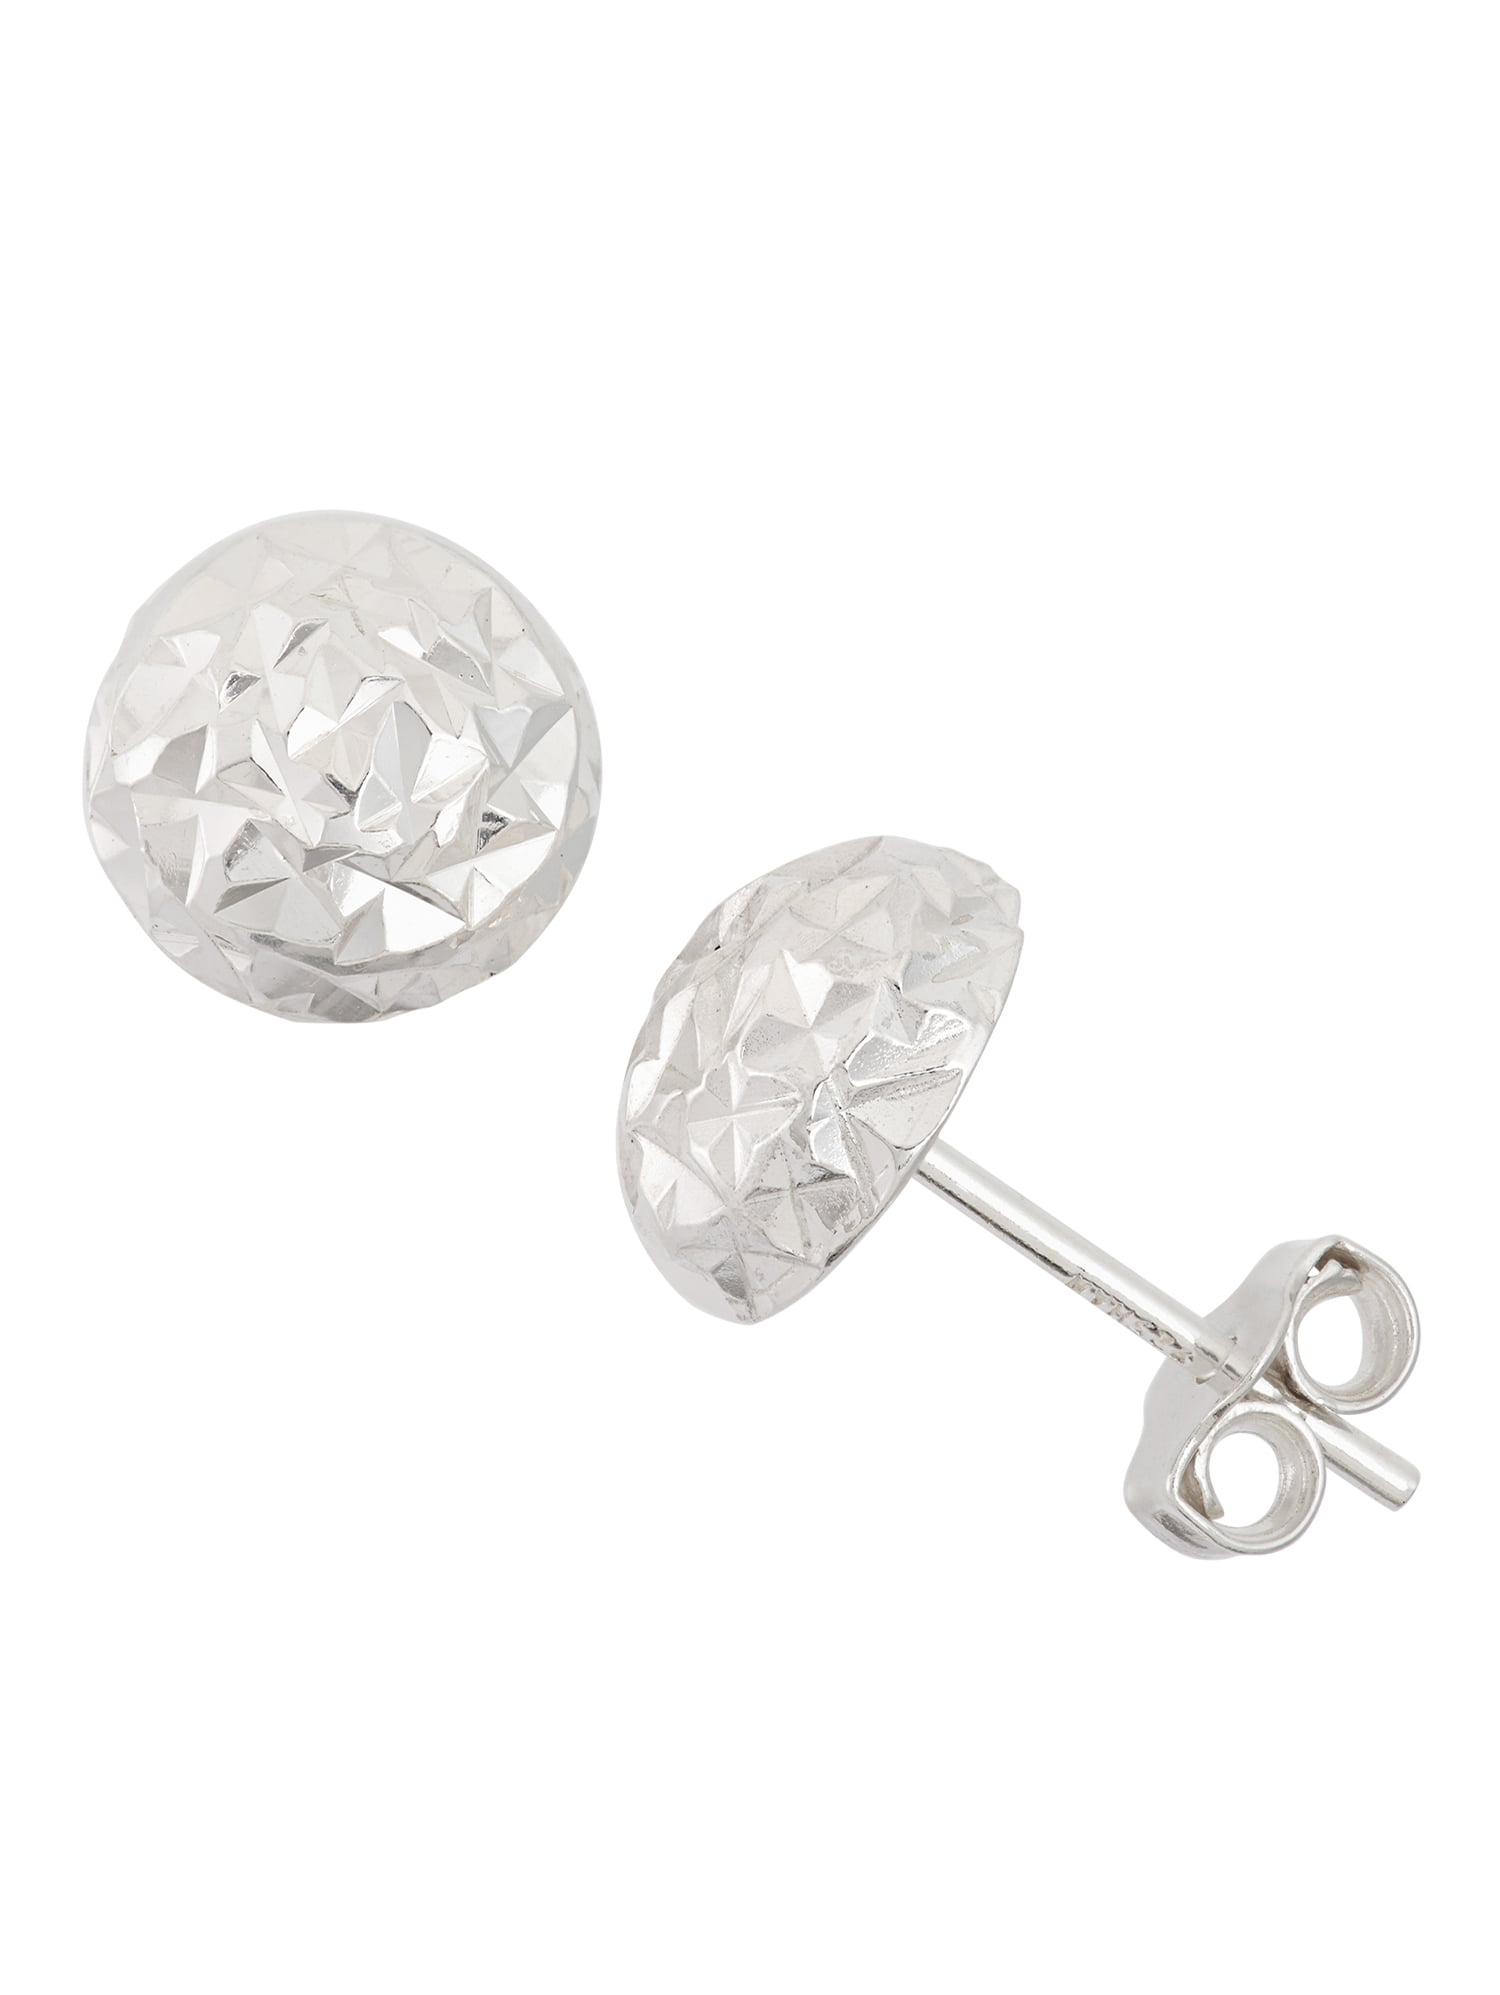 Sterling Silver 8.5mm 1/2 Ball Diamond-Cut Stud Earrings - Walmart.com